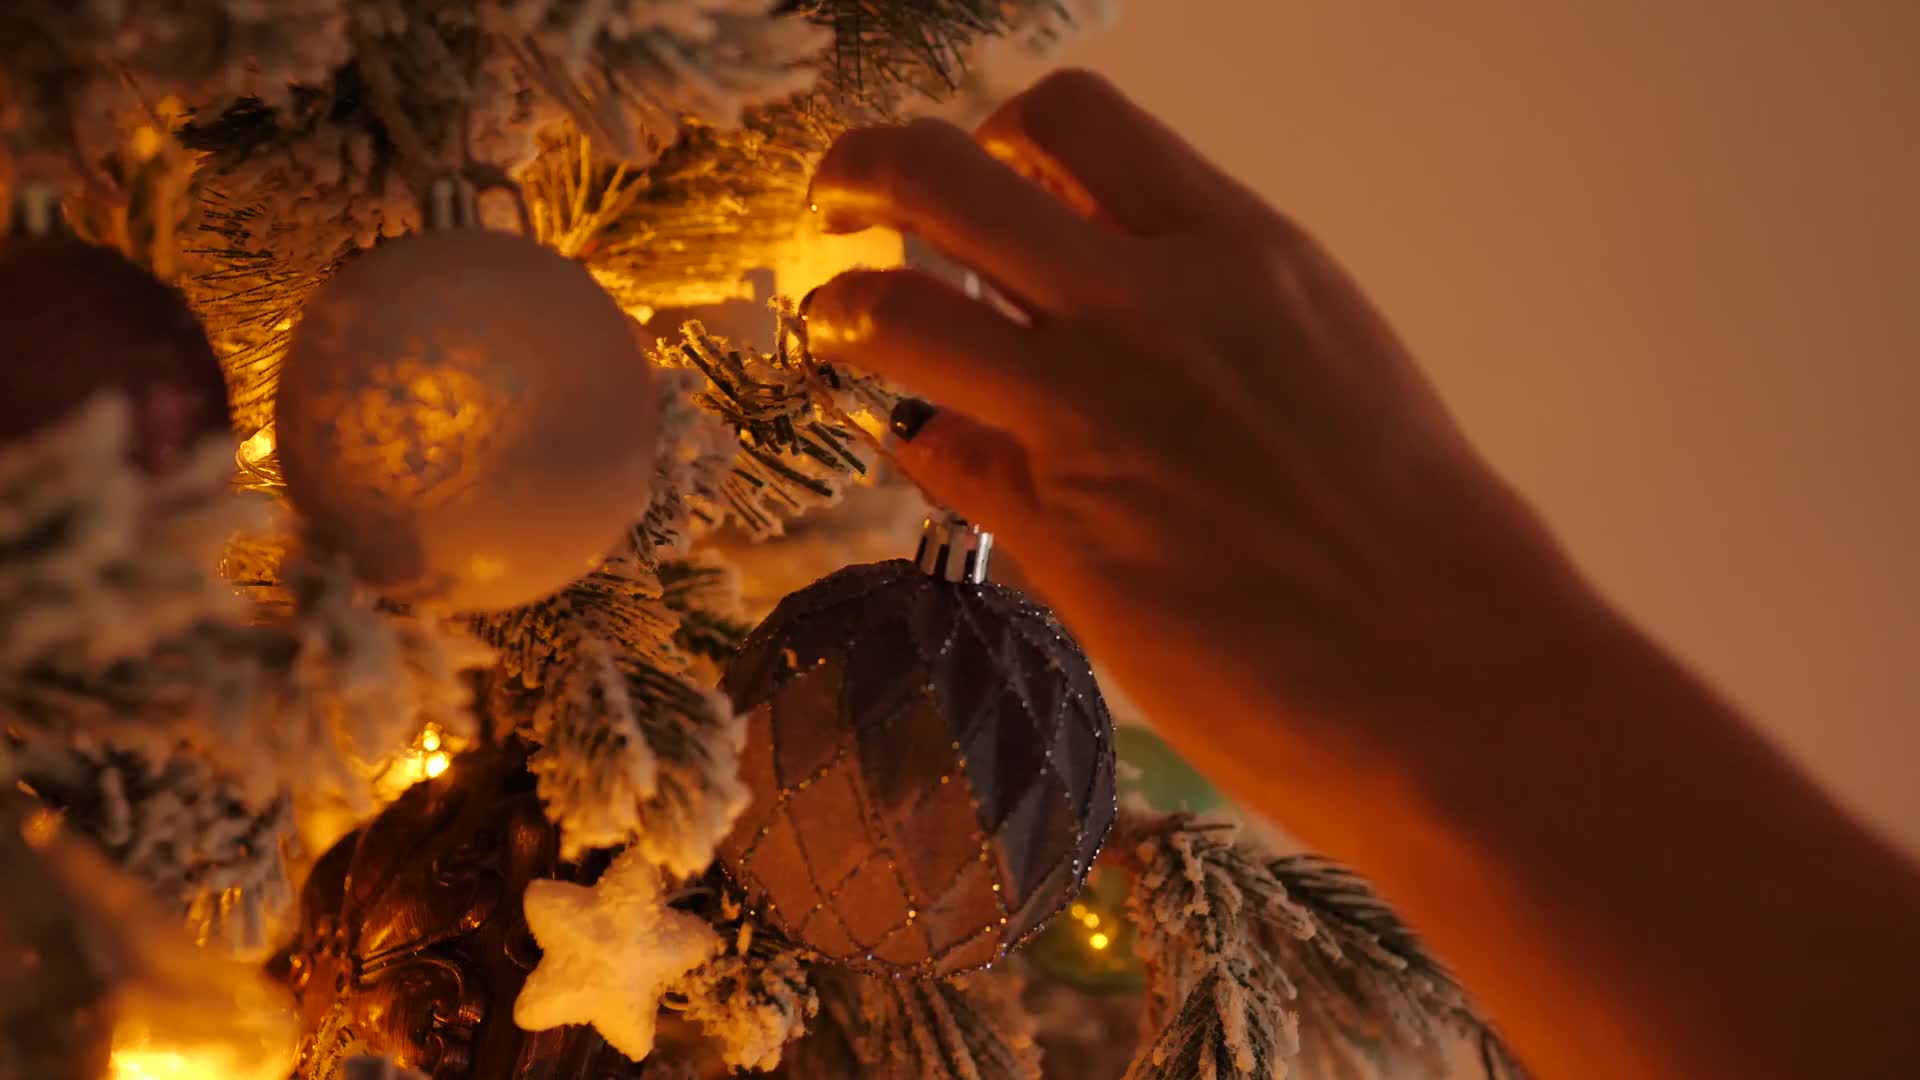 装饰圣诞树